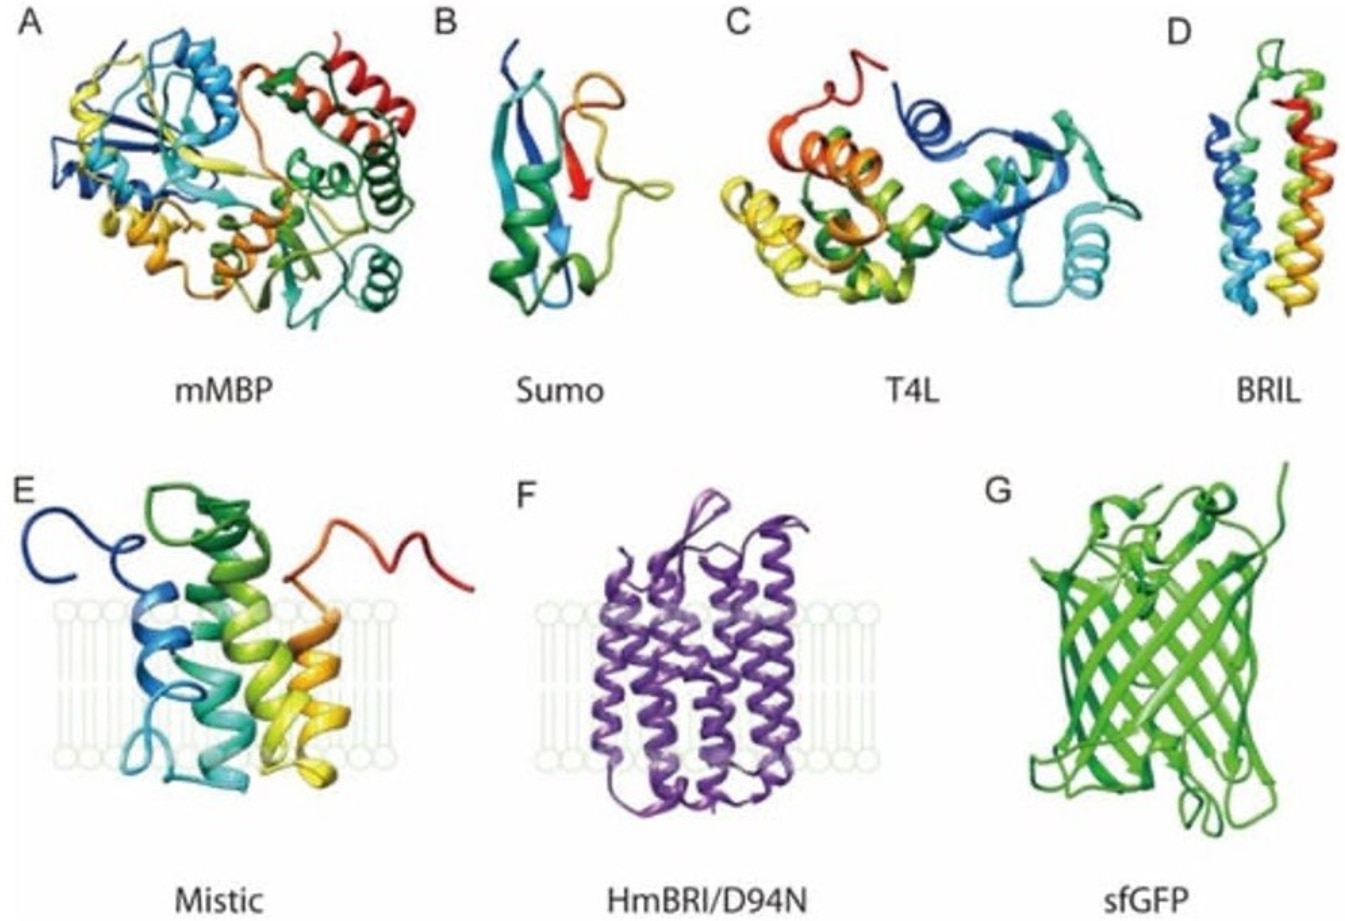 タンパク質タグの三次元構造。A:mMBP, B:SUMO, C:TaL, D:BRIL, E:Mistic, F:HmBRI/D94N, G:sfGFP